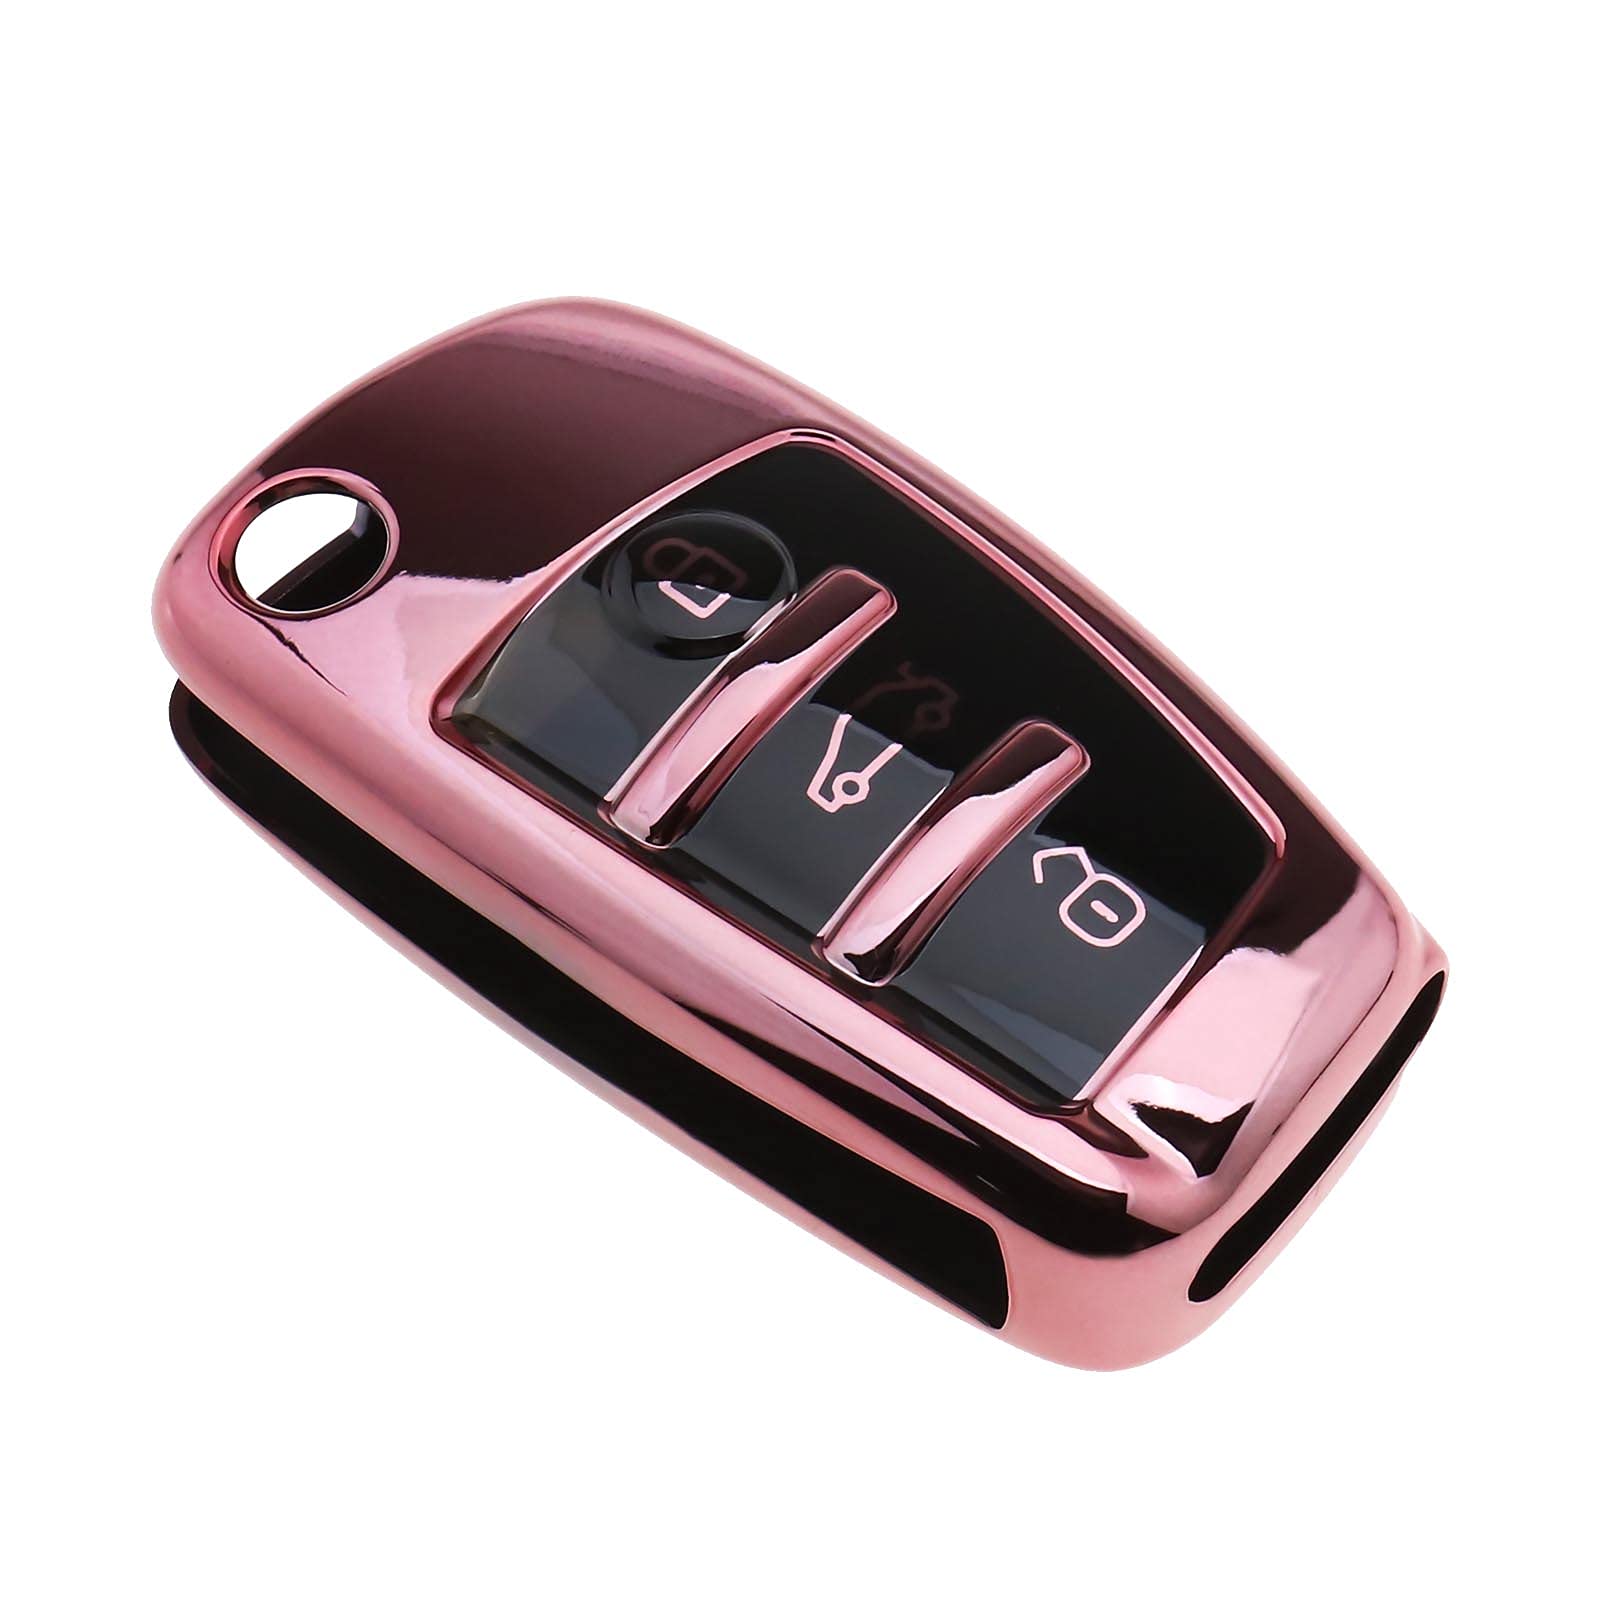 eMagTech Autoschlüssel Schutzabdeckung Schutzhüllen Weich TPU 3 Tasten Rosa Kompatibel mit Audi A1 A3 A4 A6 Q3 Q5 Q7 S3 R8 TT von eMagTech